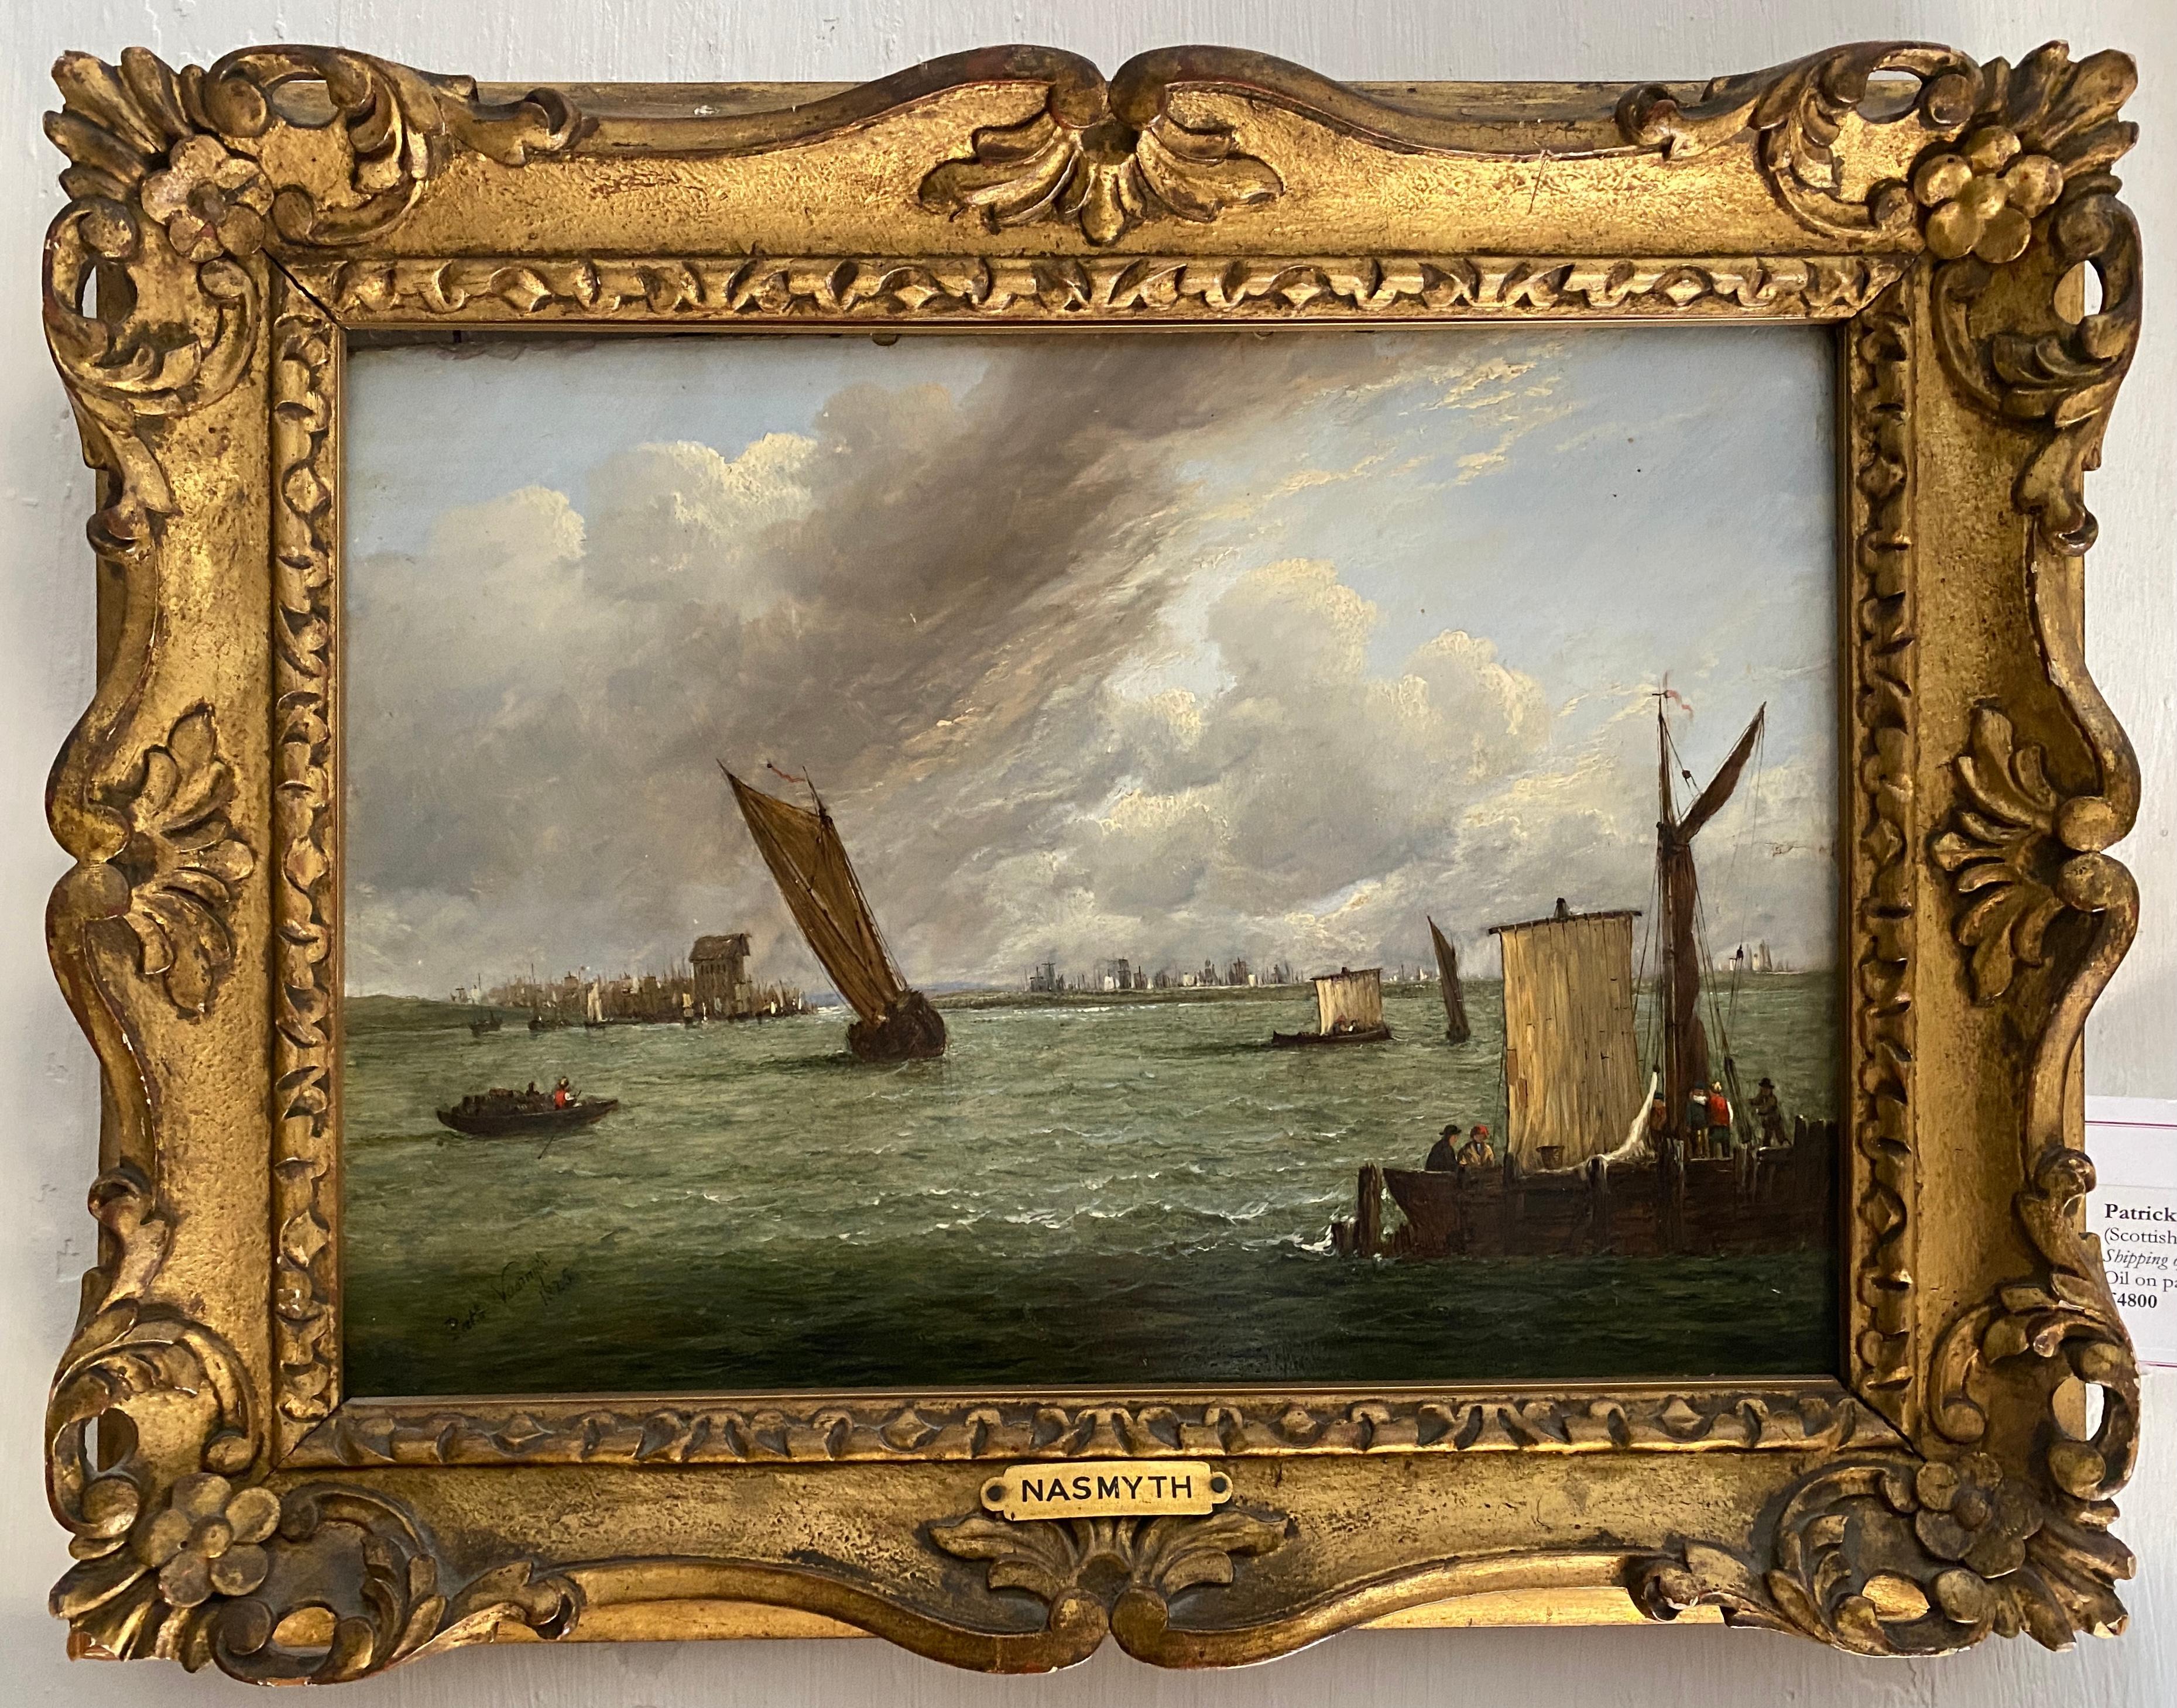 Patrick Nasmyth – Versand vor der Küste, 1825